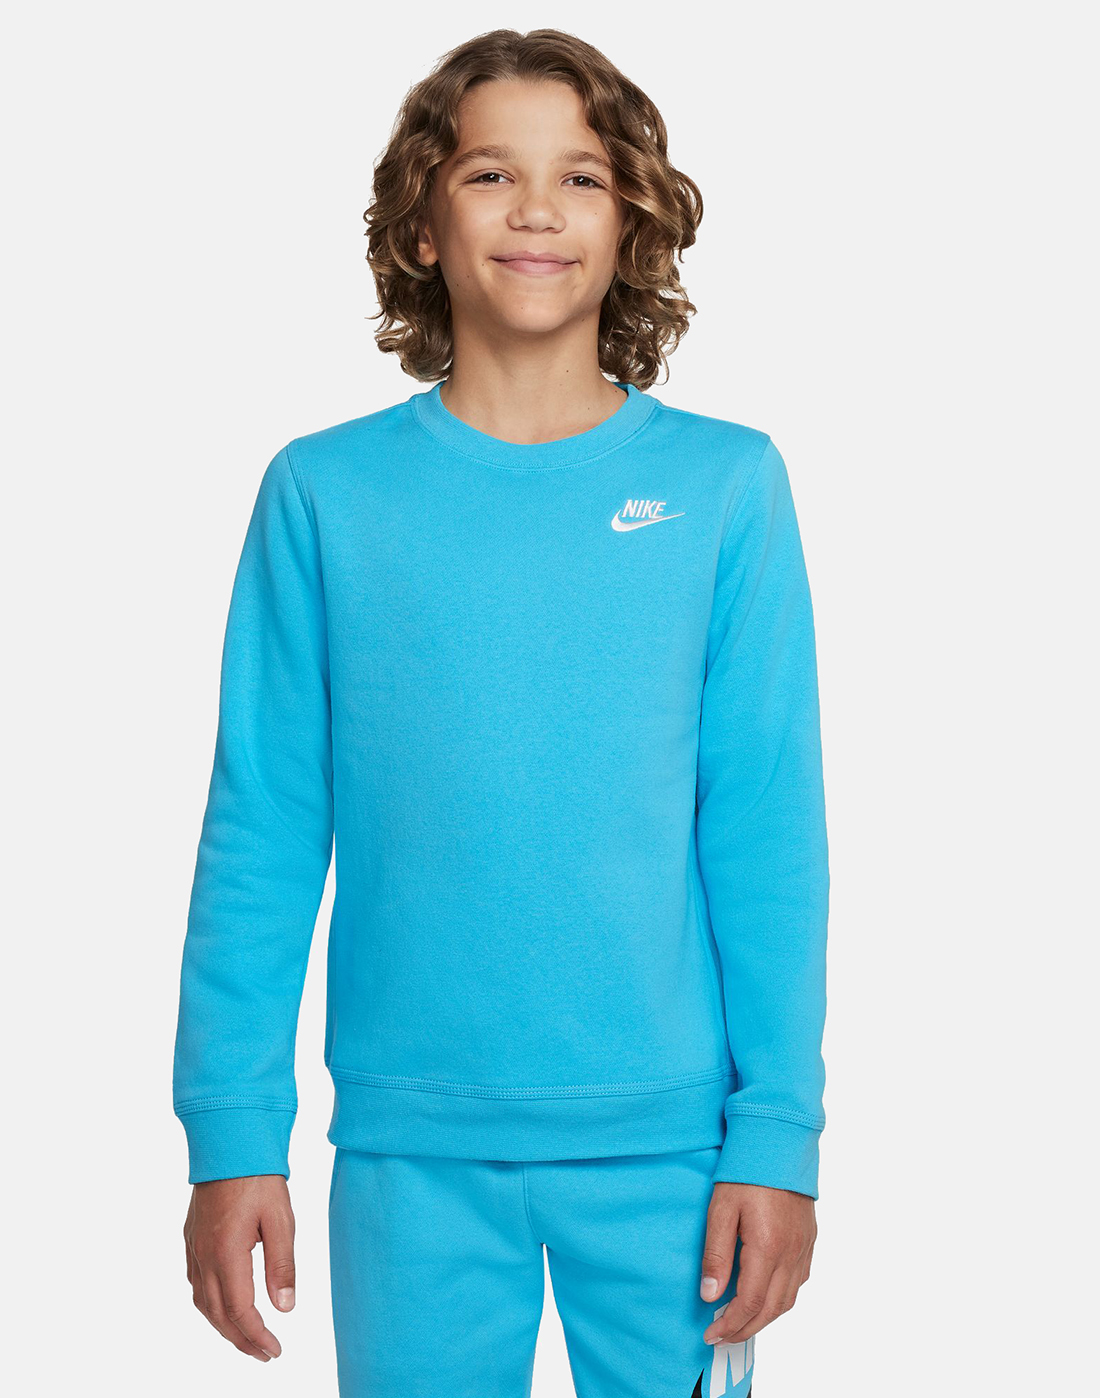 Nike Older Boys Club Crew Neck Sweatshirt - Blue | Life Style Sports UK